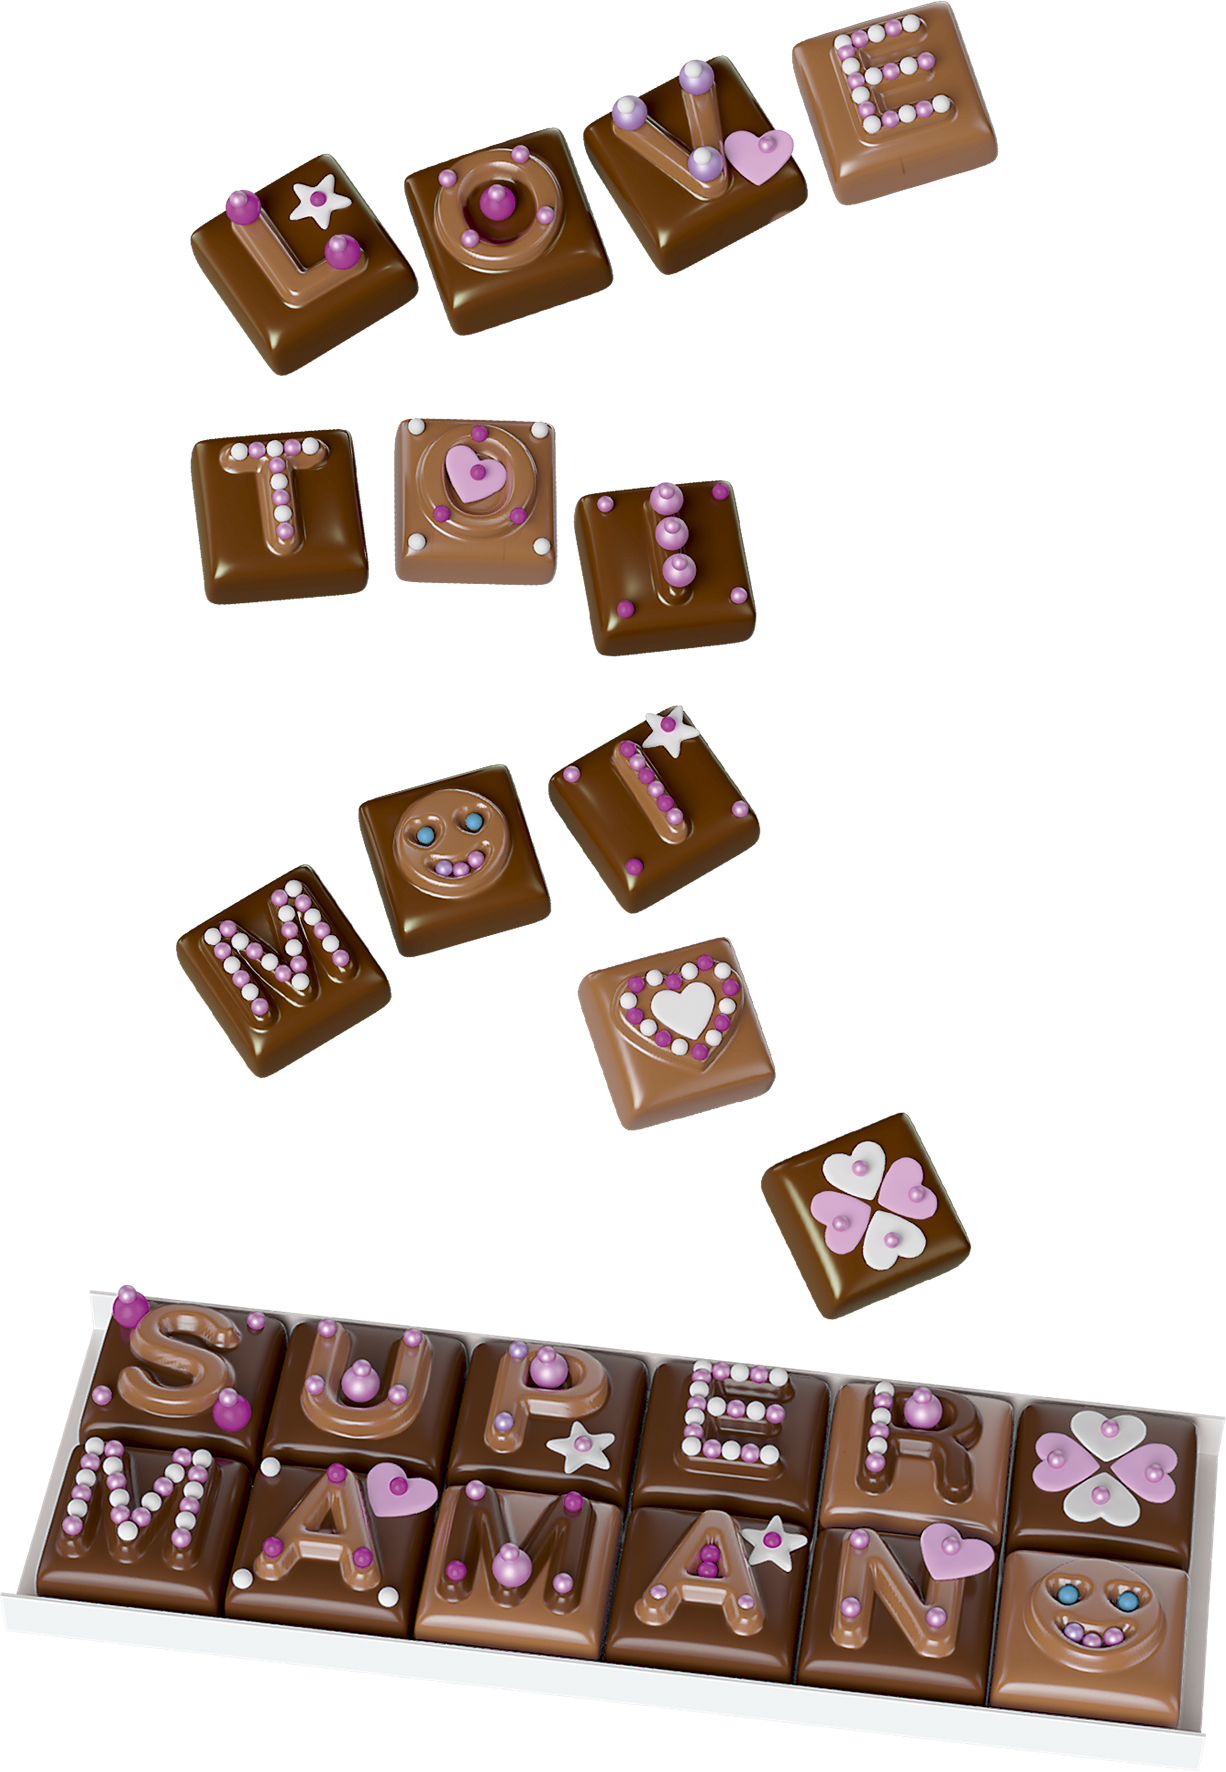 Mini Délices - Atelier Chocolat 10 En 1 - Cuisine Créative